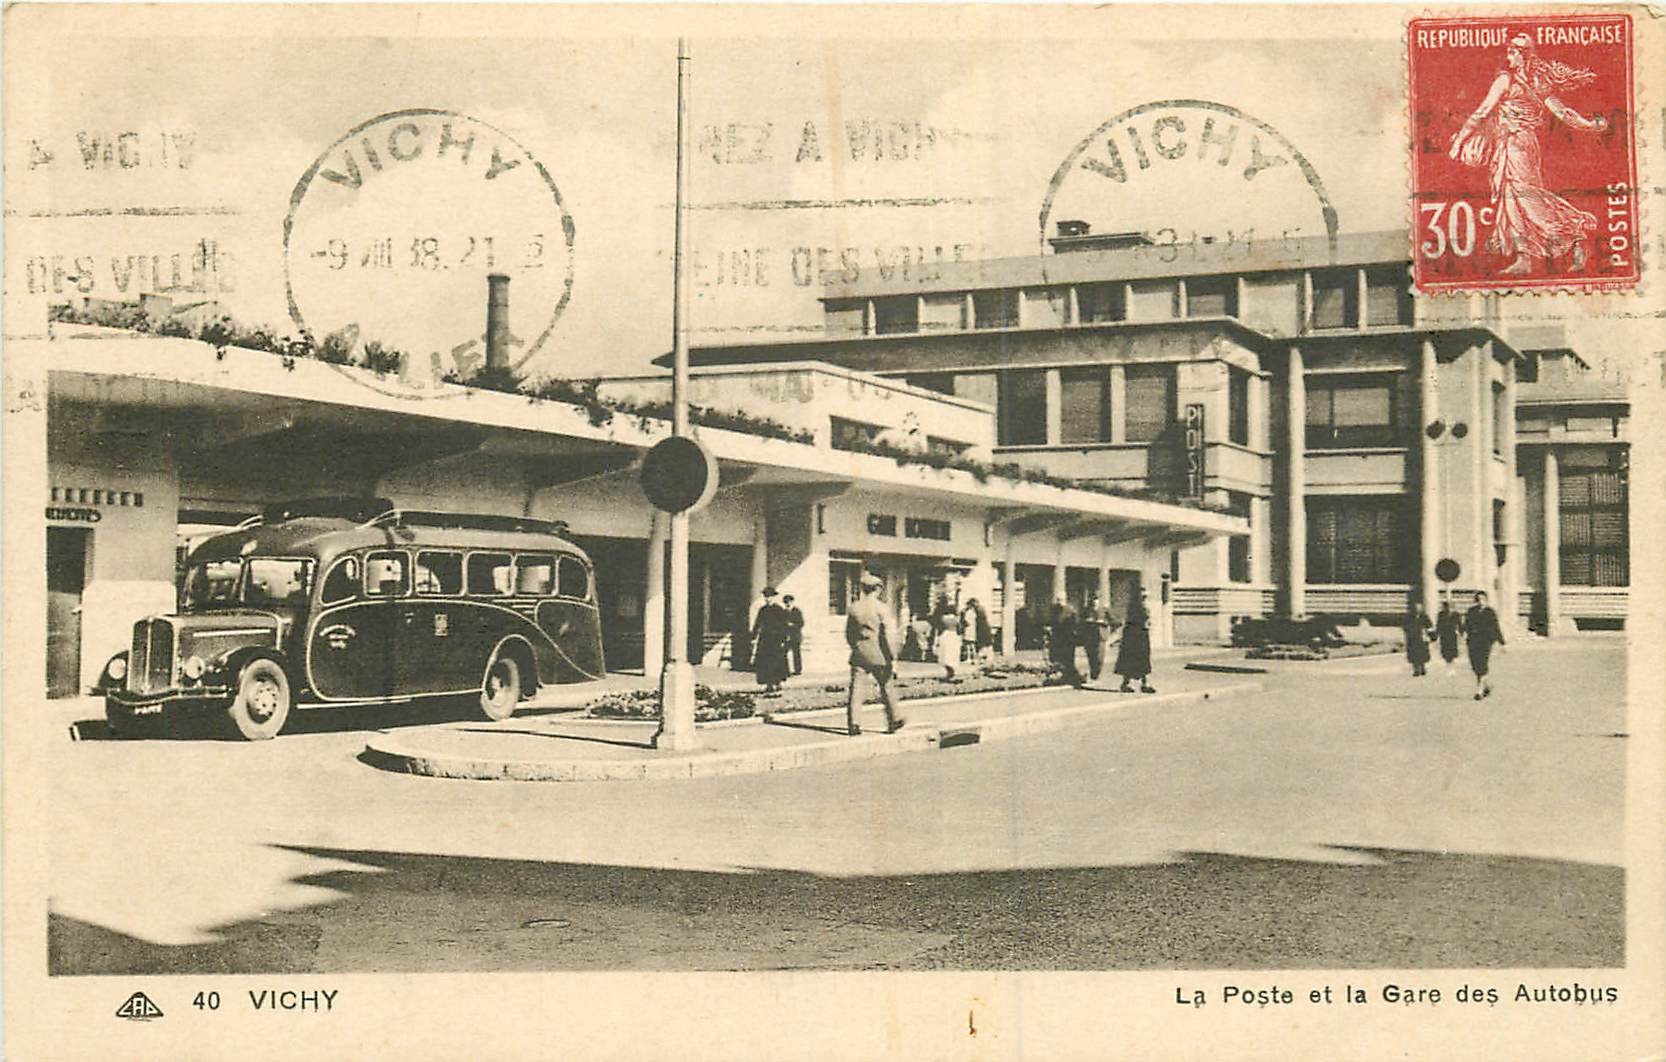 WW 03 VICHY. La Poste et la Gare des Autobus 1938